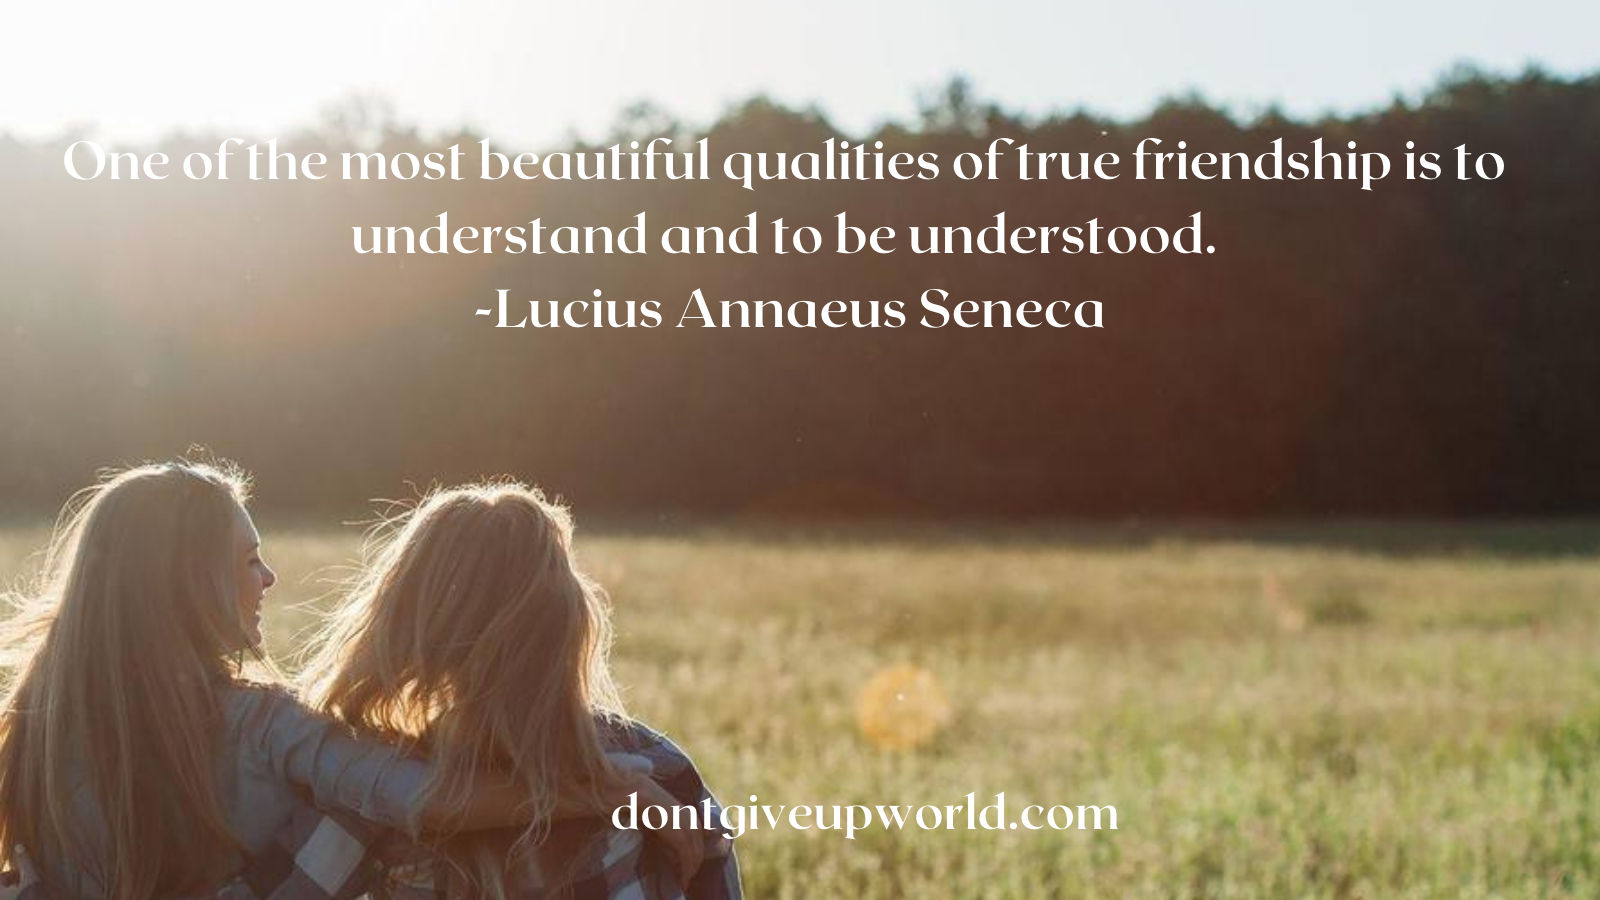 Quote on qualities of true friendship by Lucius Annaeus Seneca